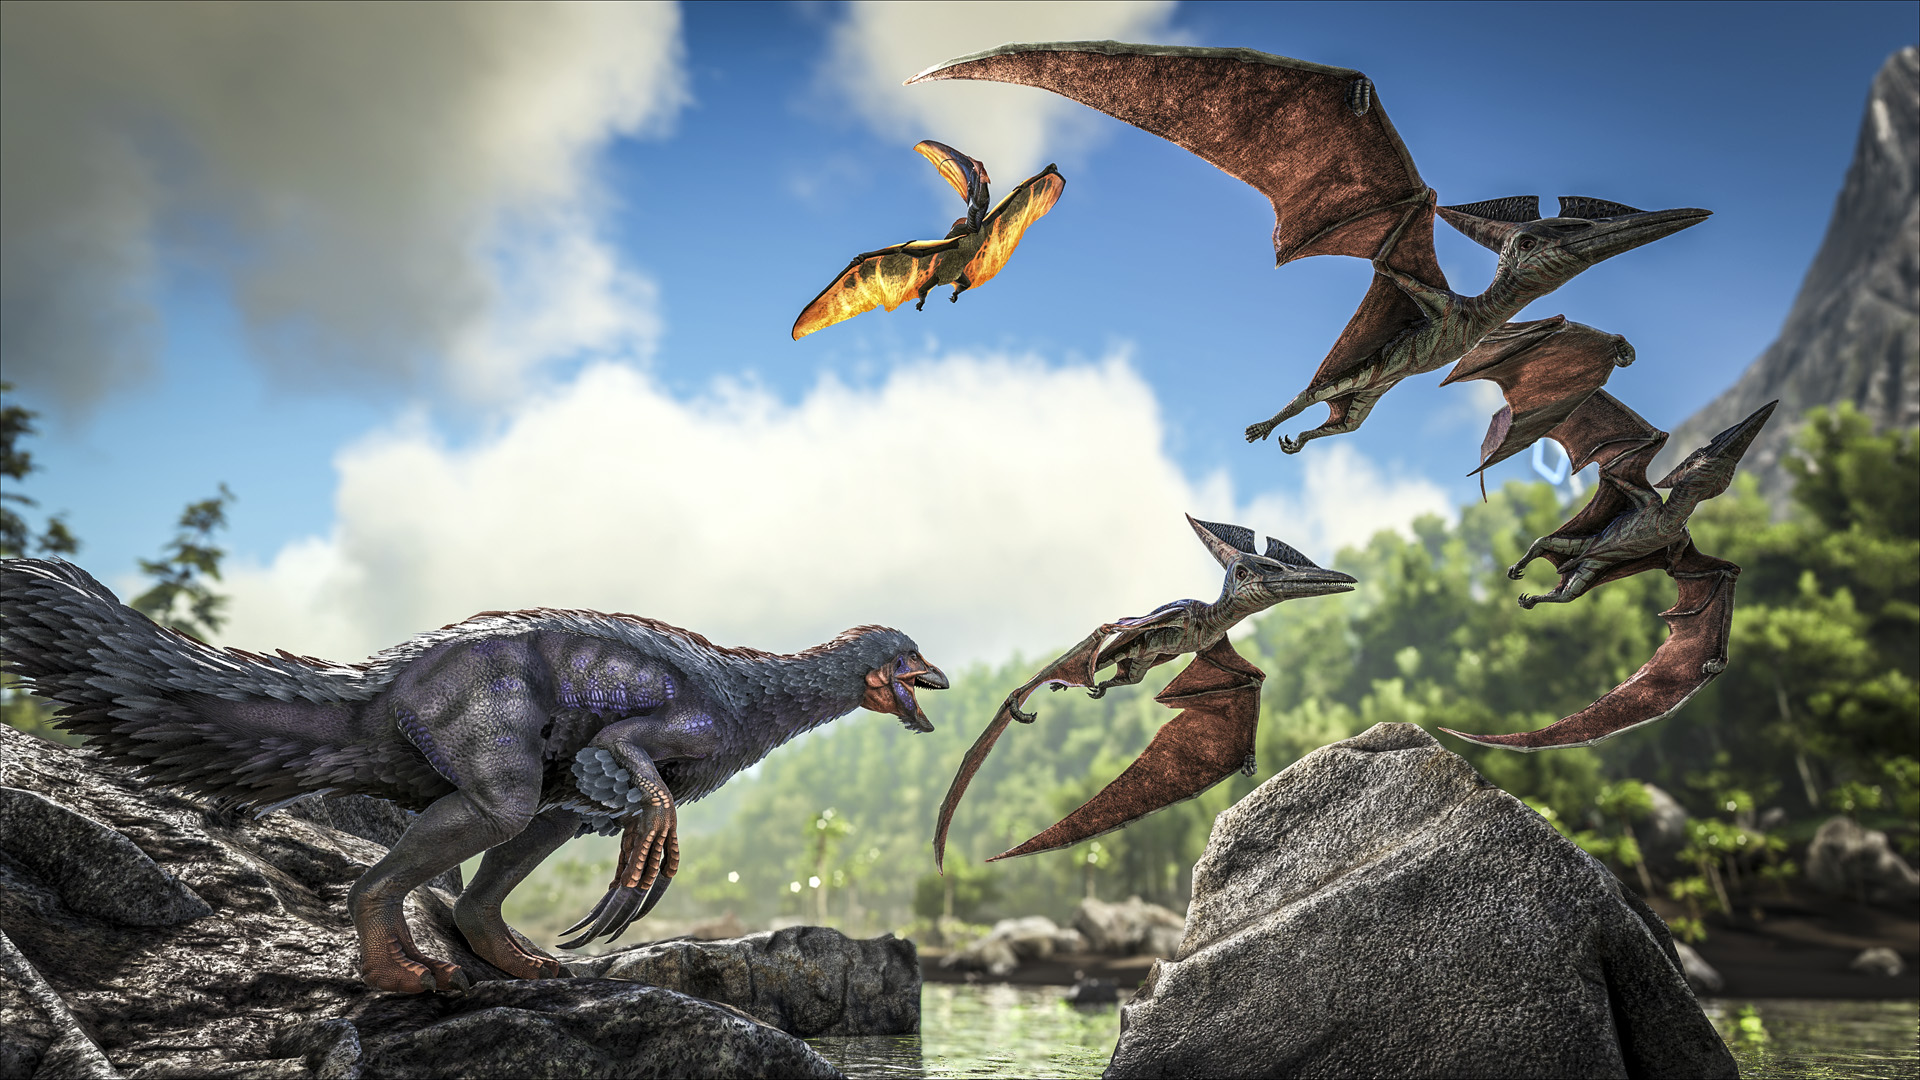 Ark Admin Commands: Plusieurs pteranodons survolent une rivière alors qu'un plus petit dinosaure regarde